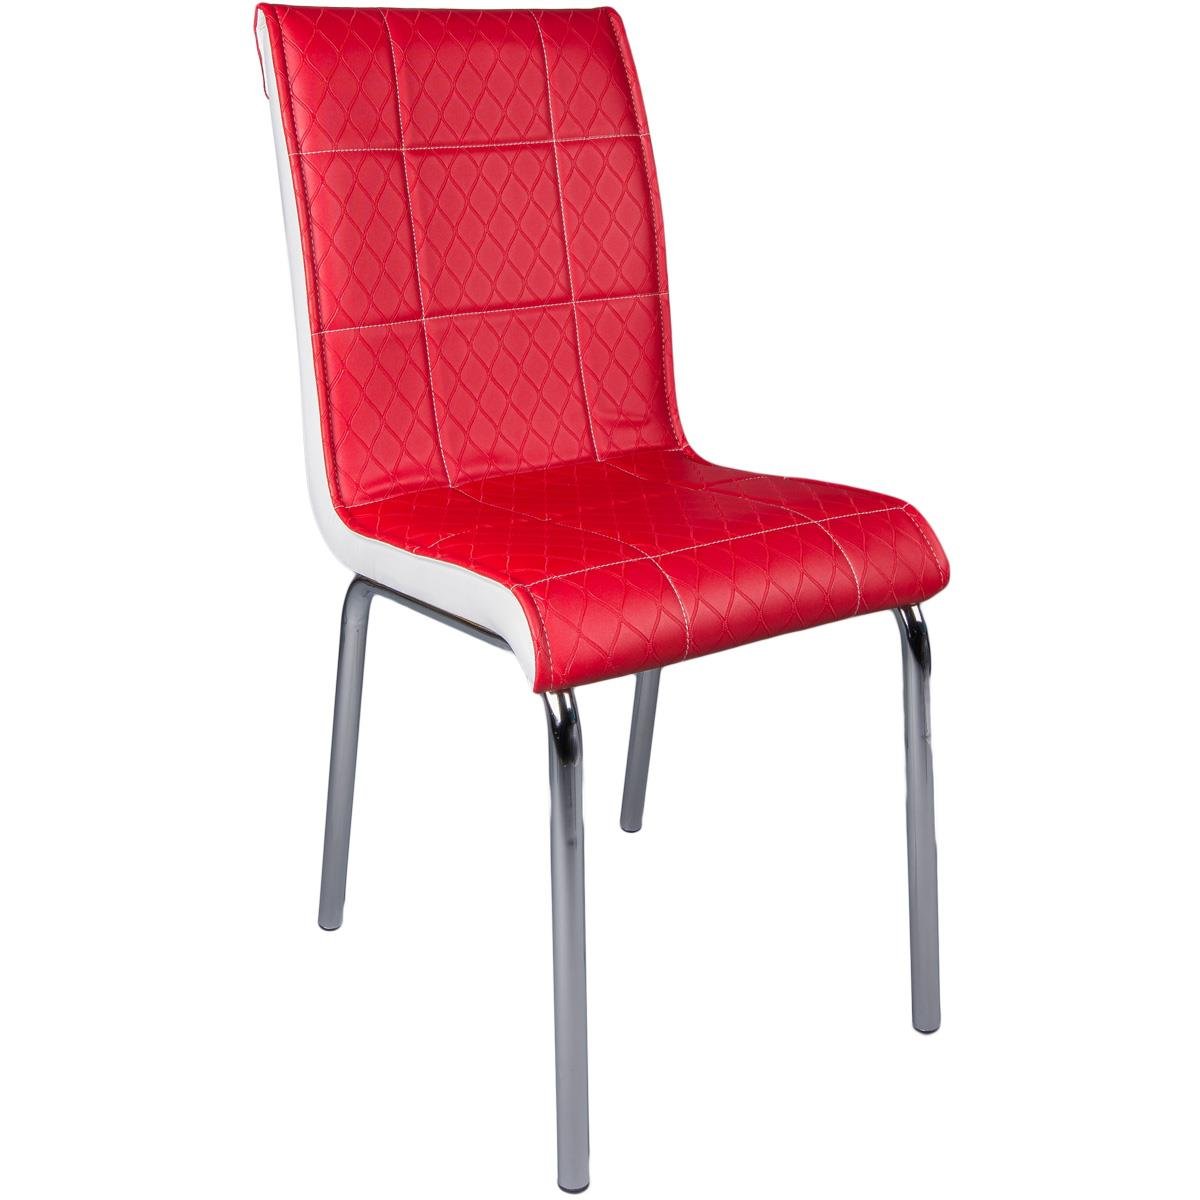 Monopetli Düz Renk Kırmızı Sandalye